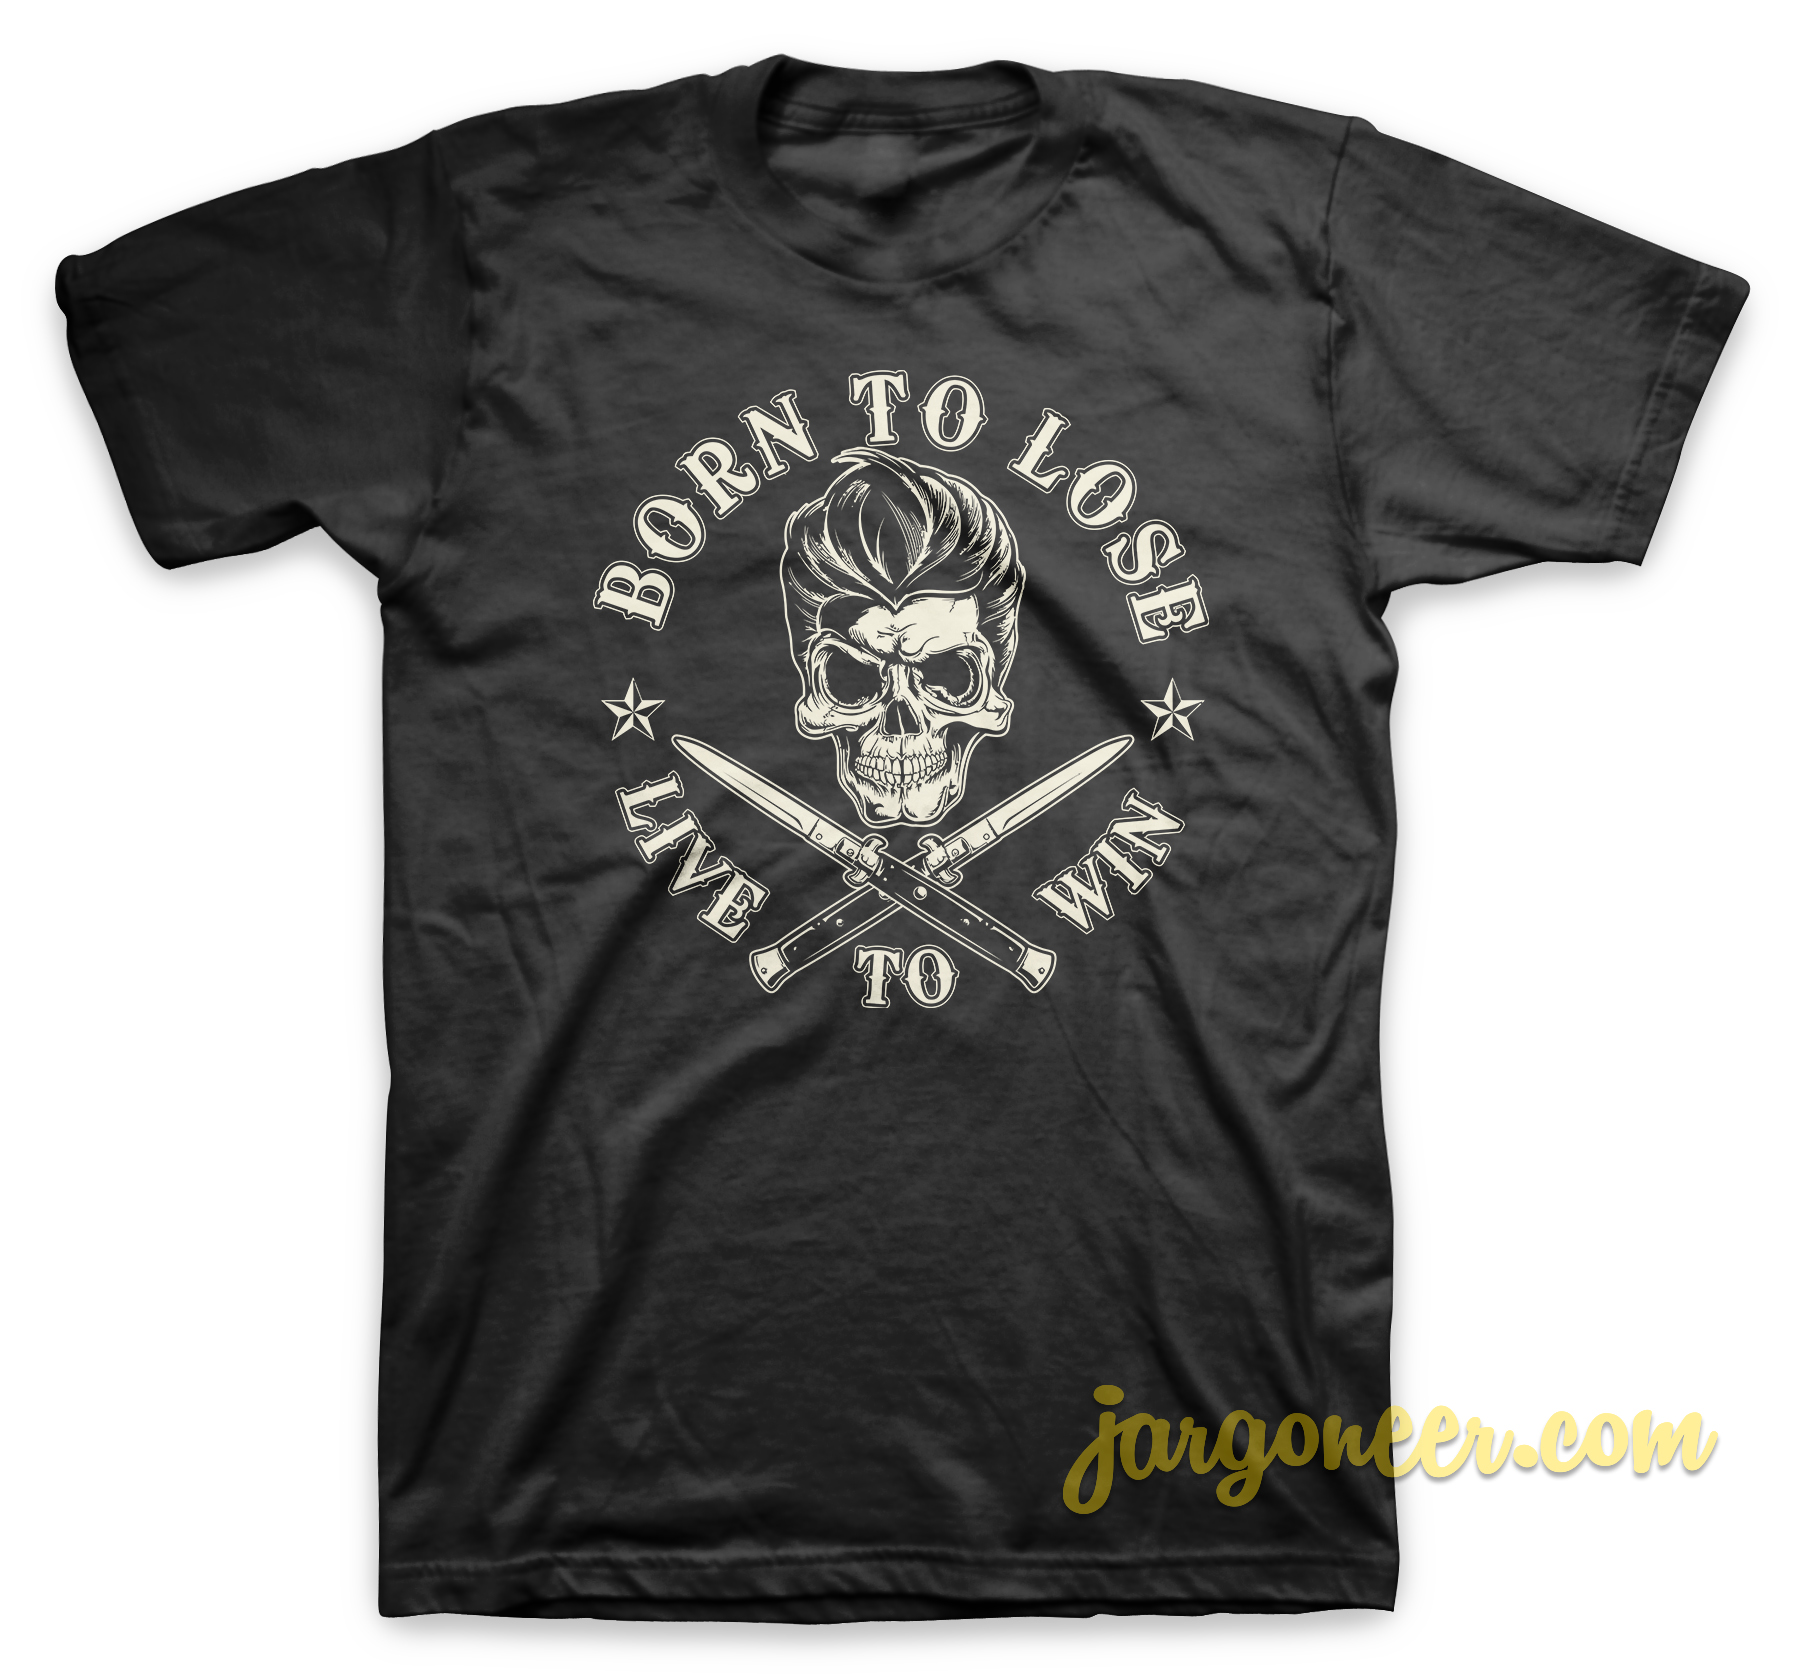 Born To Lose Black T Shirt - Shop Unique Graphic Cool Shirt Designs